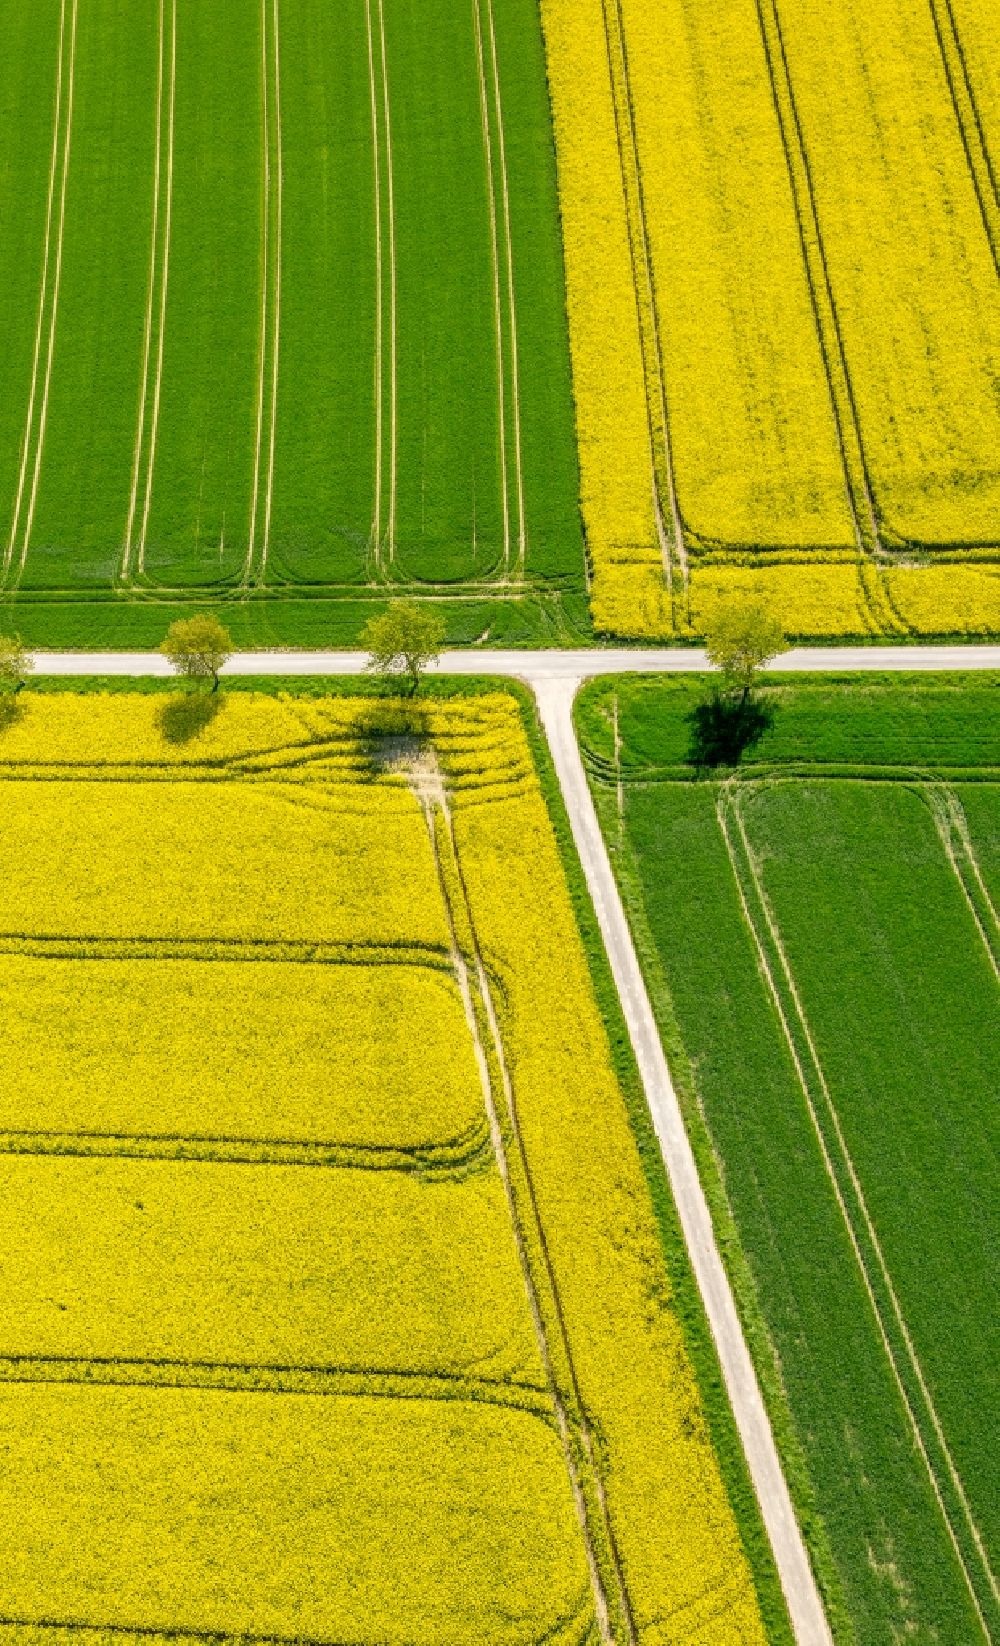 Luftbild Belecke - Feld- Landschaft gelb blühender Raps- Blüten in Belecke im Bundesland Nordrhein-Westfalen, Deutschland